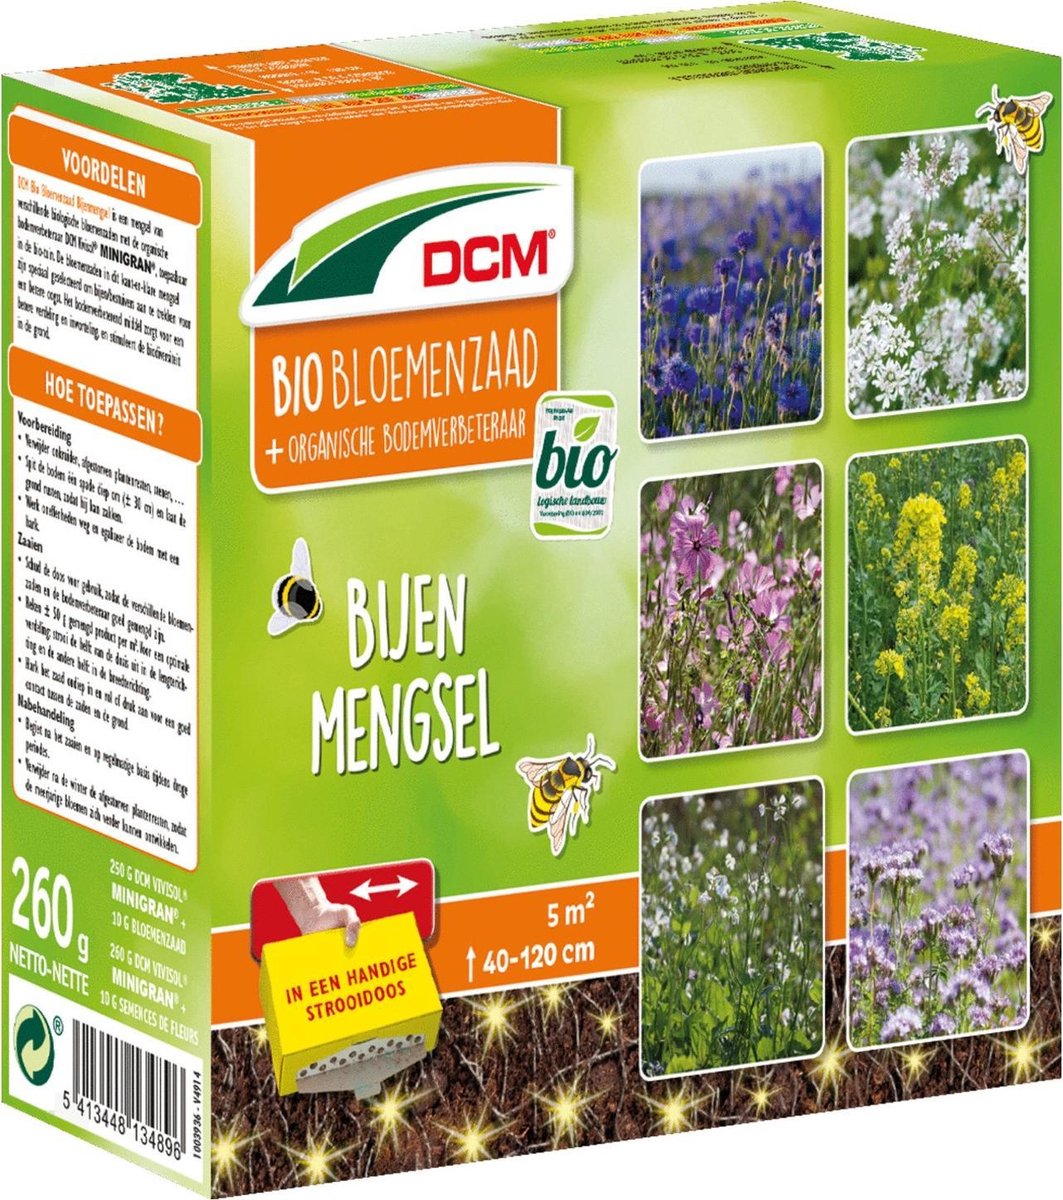 DCM bloemenmengsel bijen 260 gr Bio 5m2